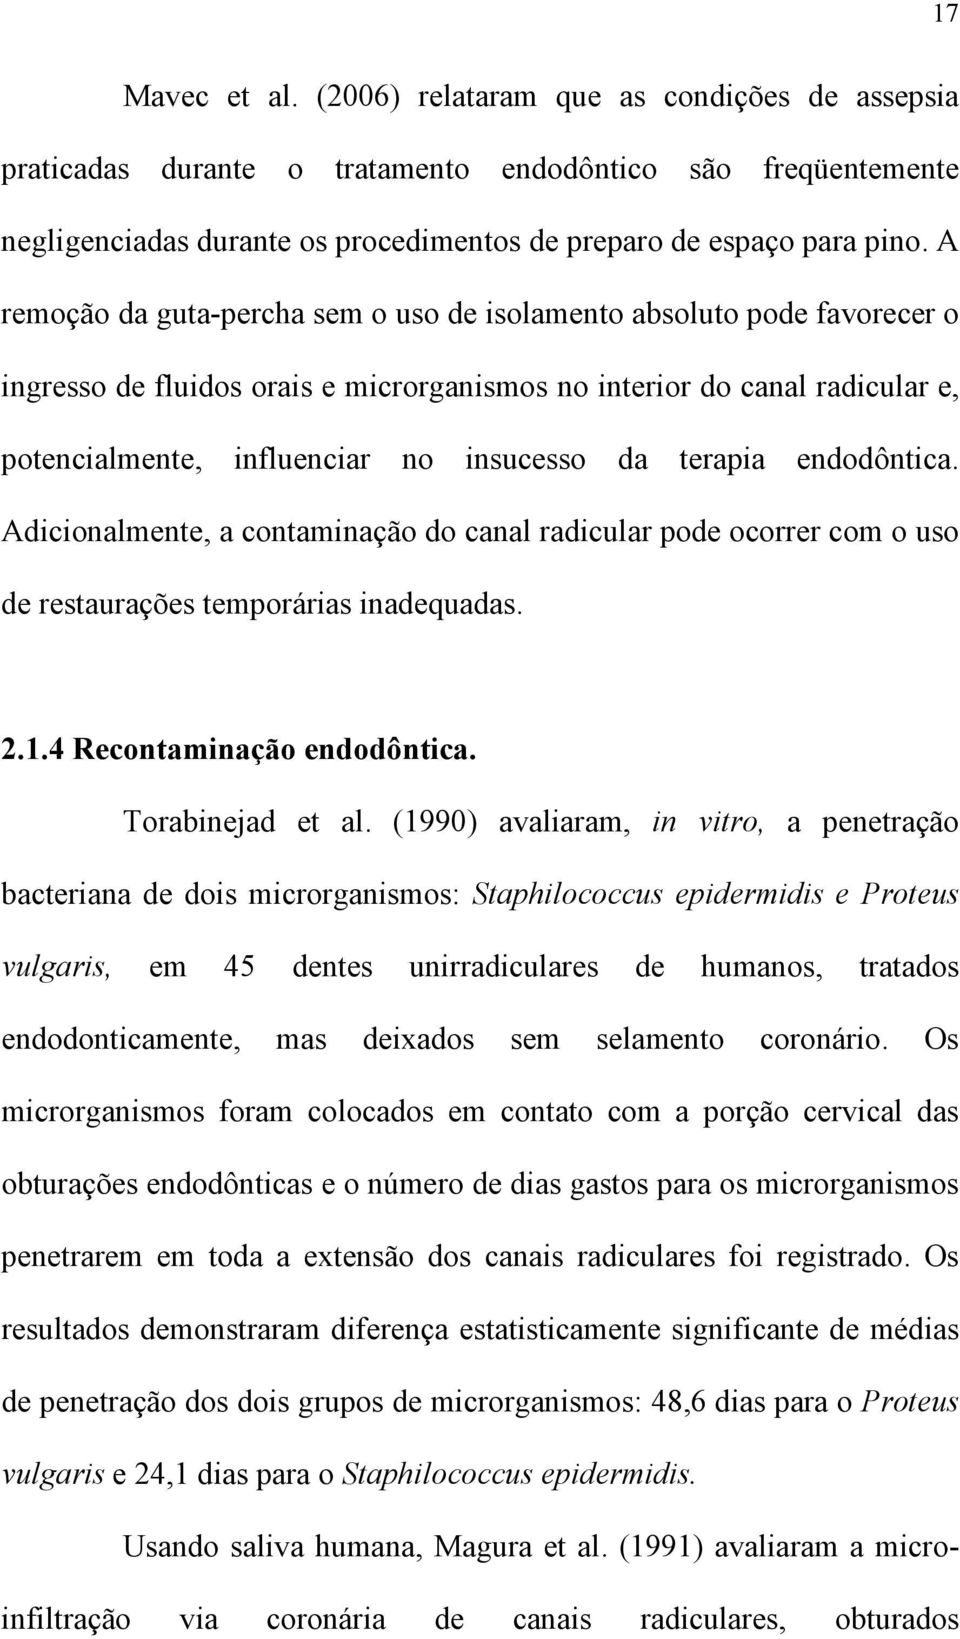 terapia endodôntica. Adicionalmente, a contaminação do canal radicular pode ocorrer com o uso de restaurações temporárias inadequadas. 2.1.4 Recontaminação endodôntica. Torabinejad et al.